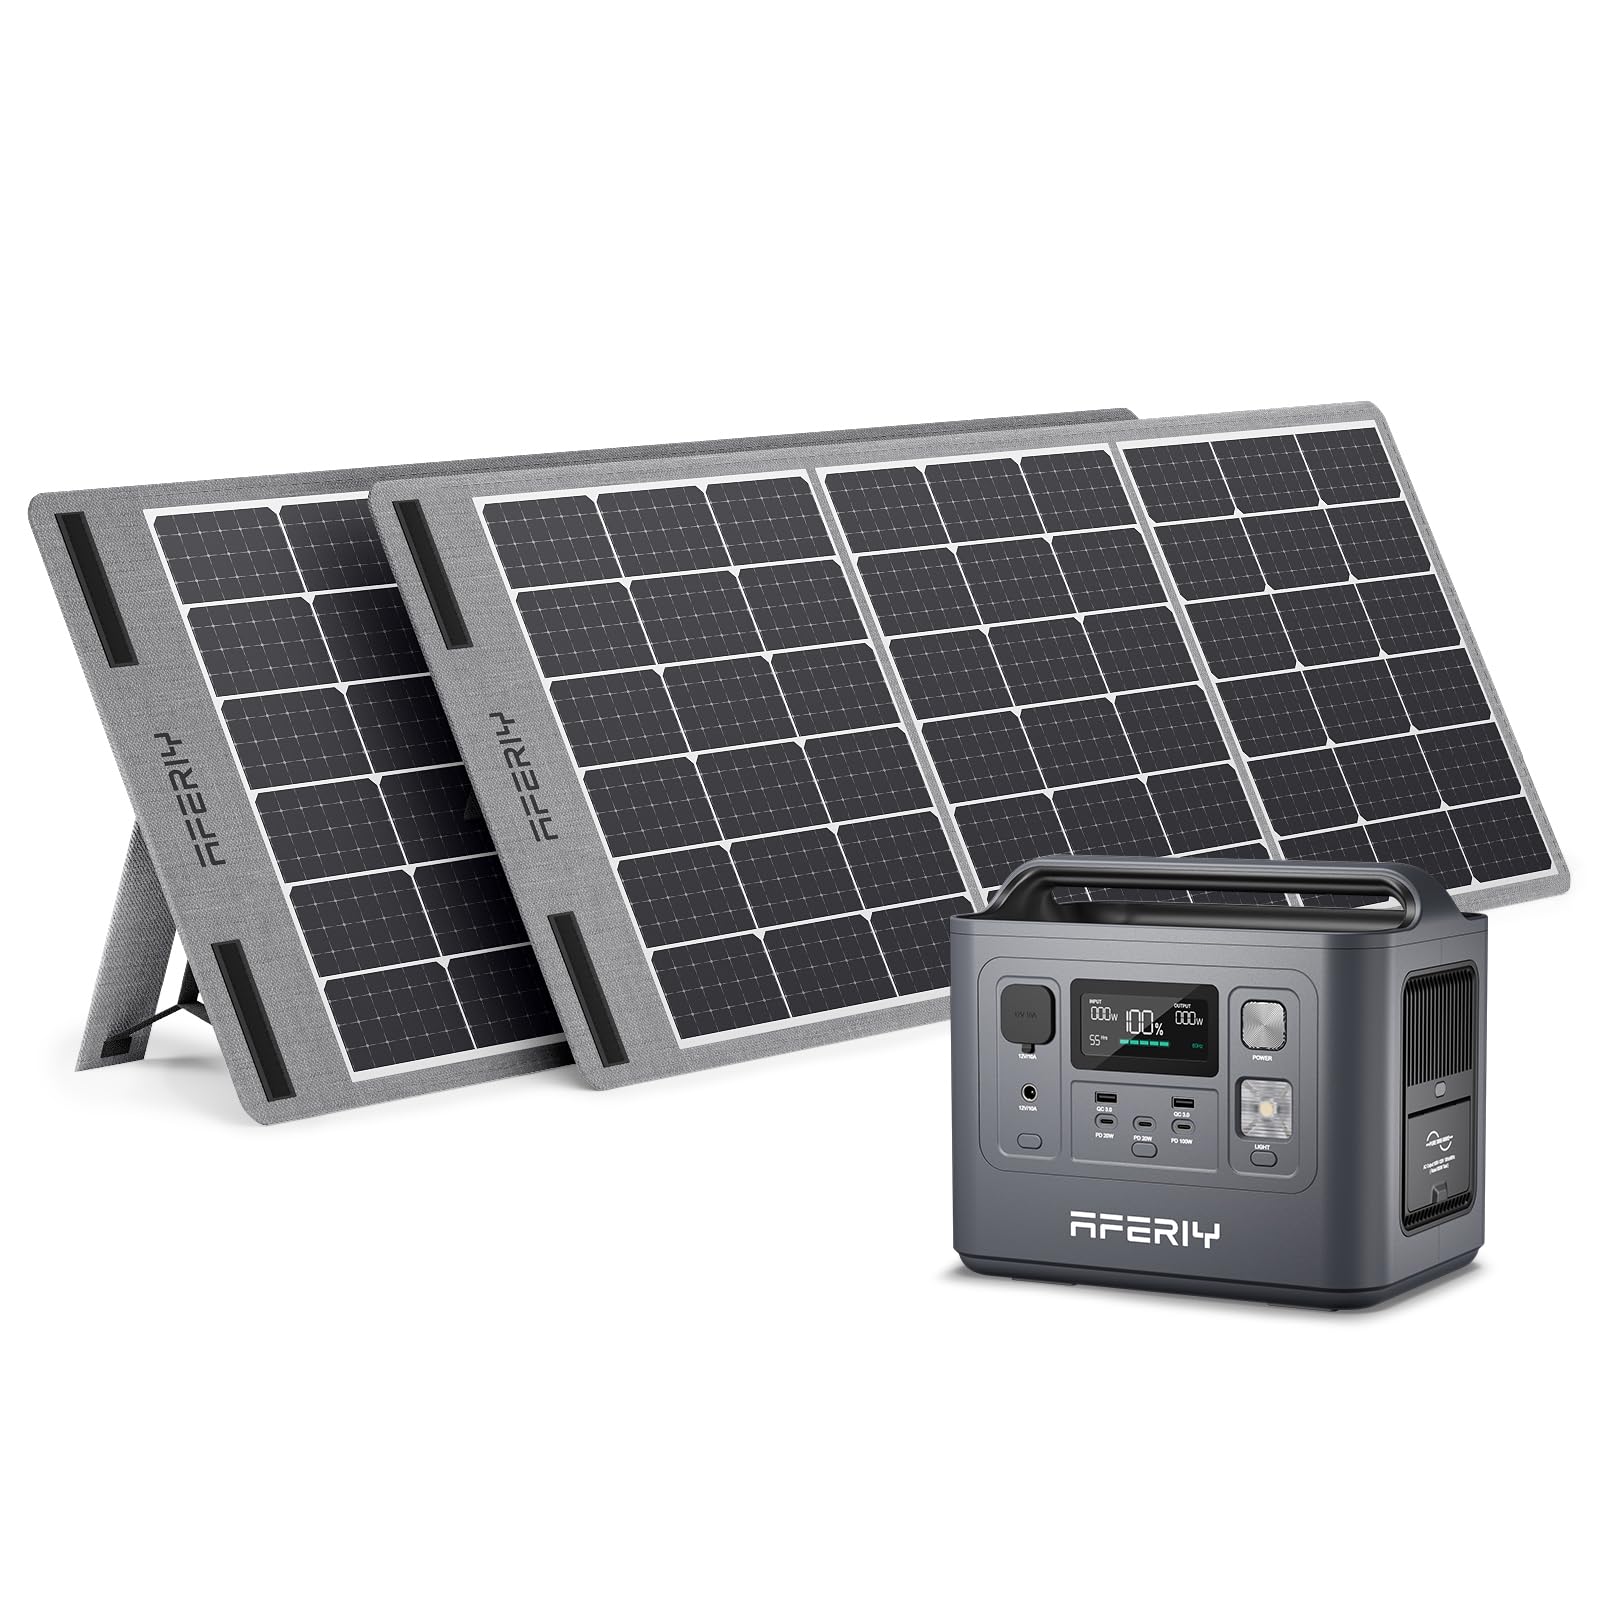 AFERIY Solar Generator P010 800Wポータブル電源 100W ソーラーパネル